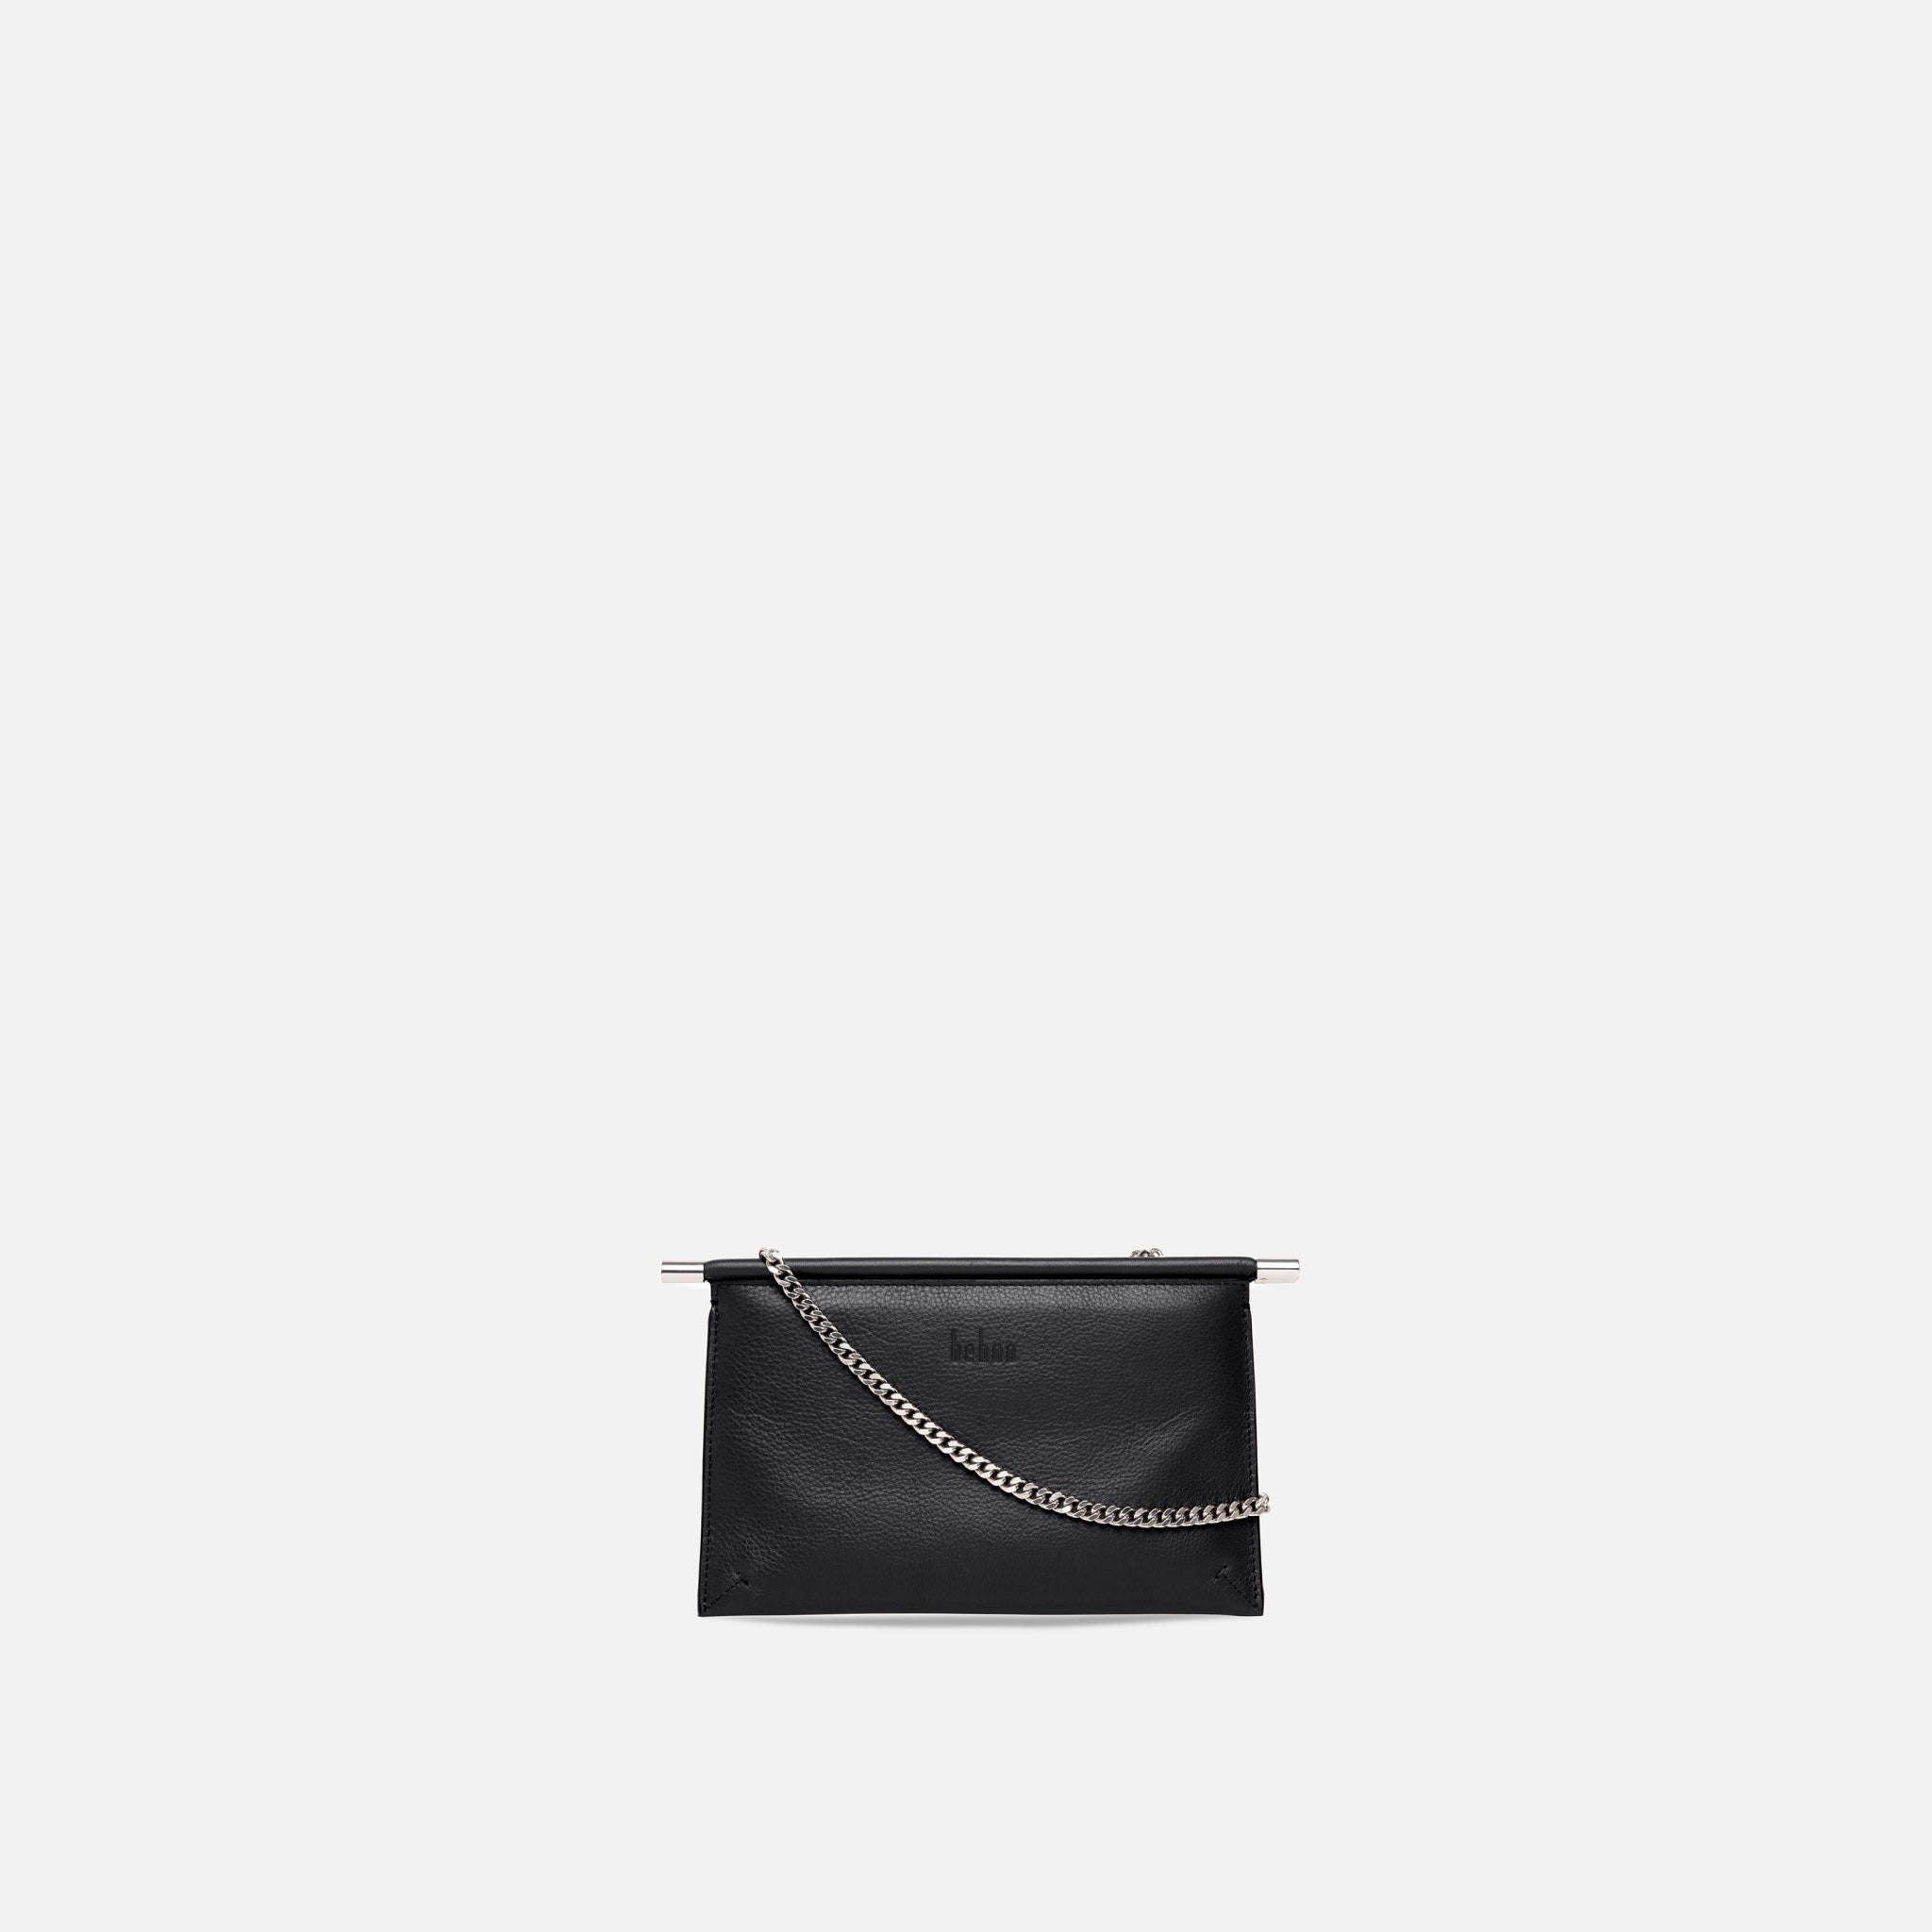 Grey Luxury leather Handbag Freda